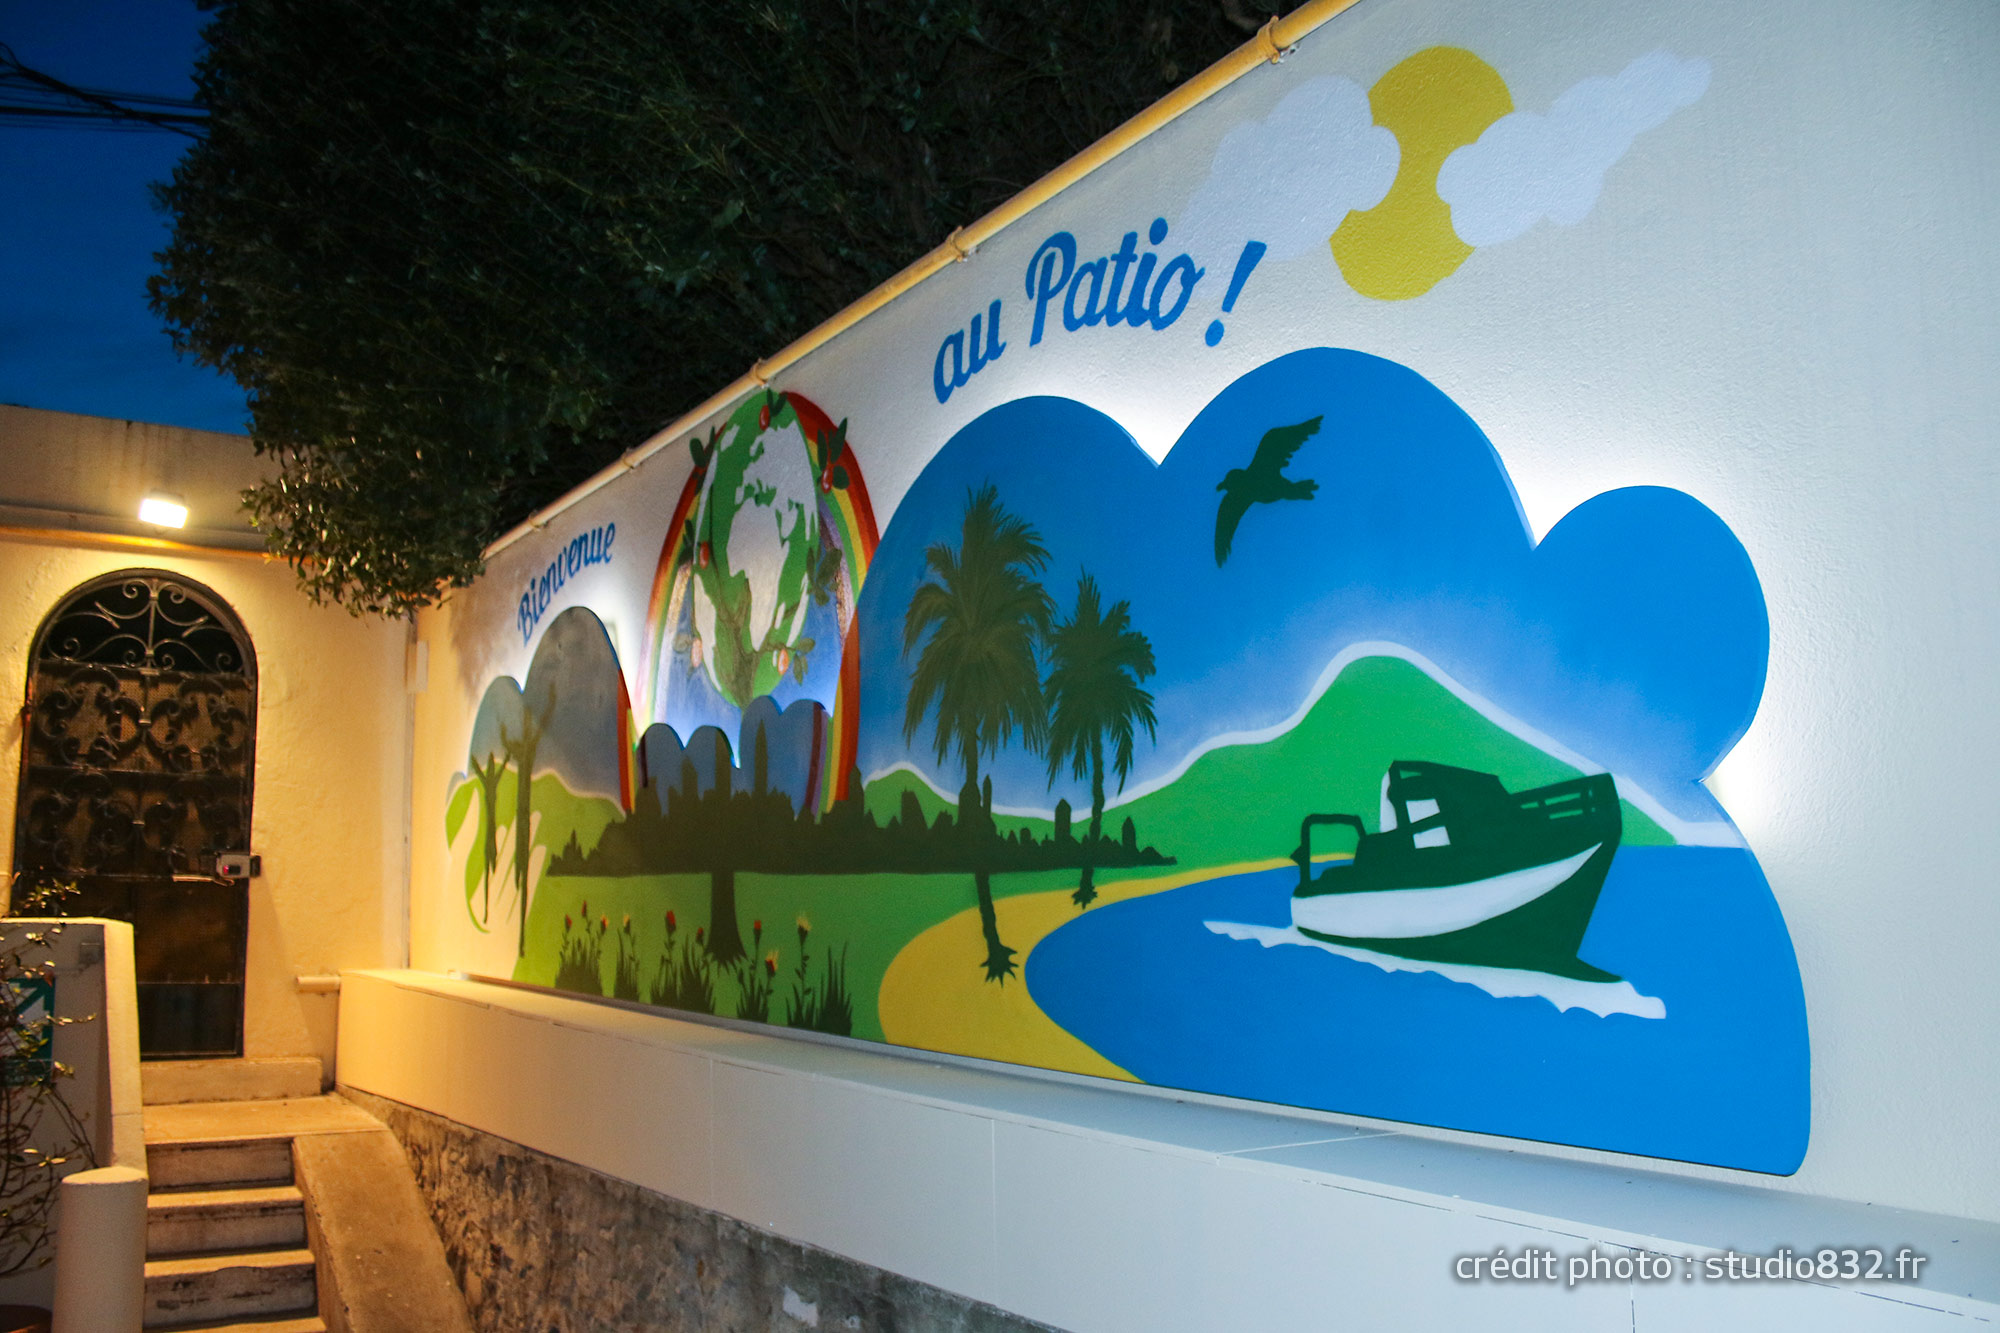 Fresque Street Art Graffiti Bienvenue Toulon, La Seyne Ollioules Hyères La Garde La Valette du Var